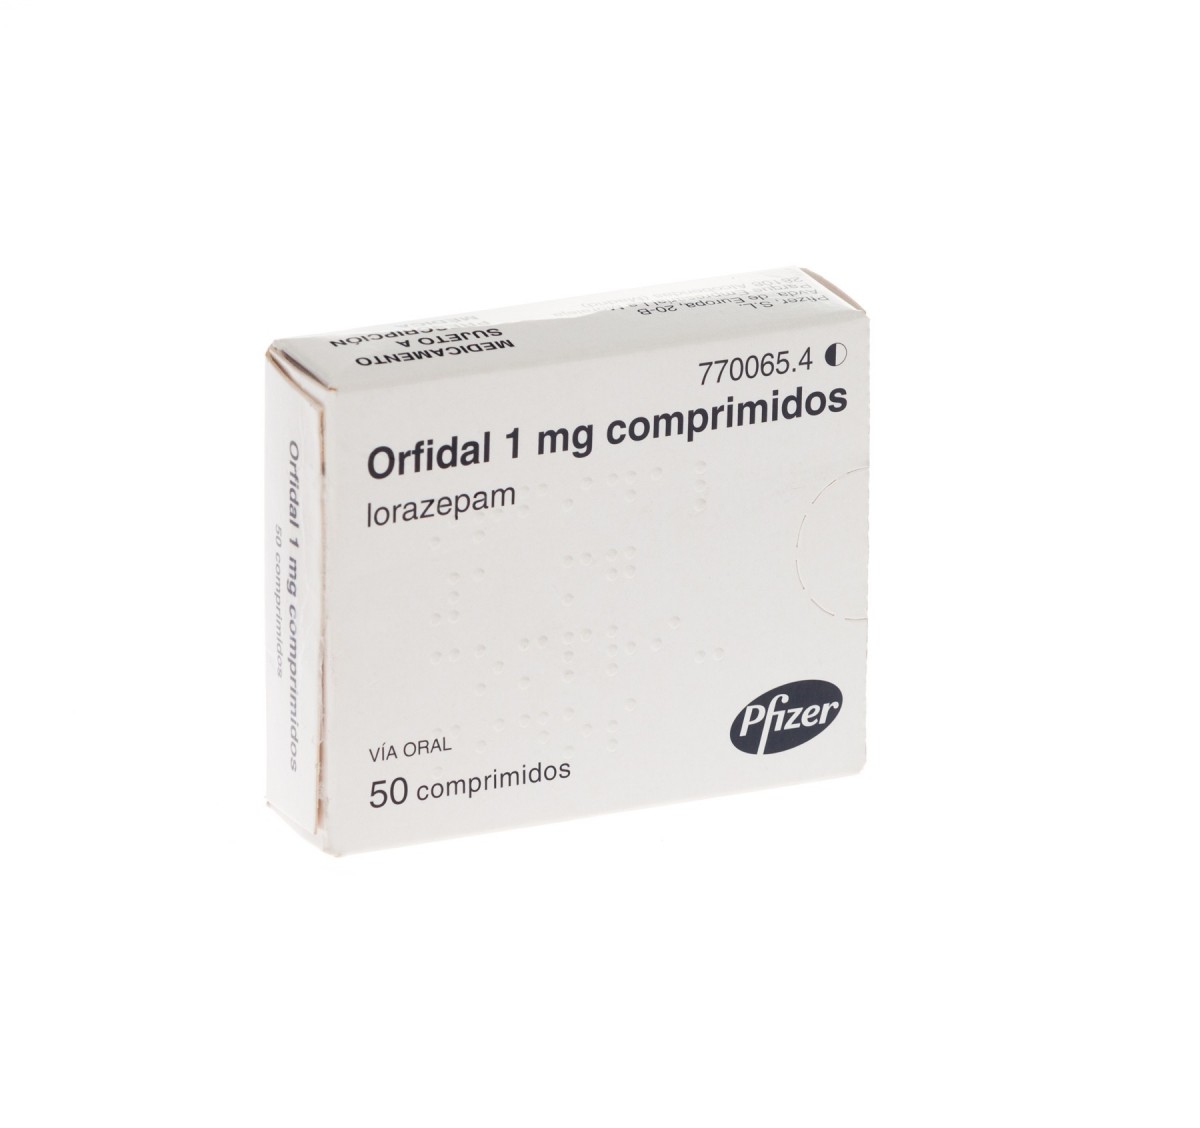 ORFIDAL 1 mg COMPRIMIDOS, 50 comprimidos fotografía del envase.